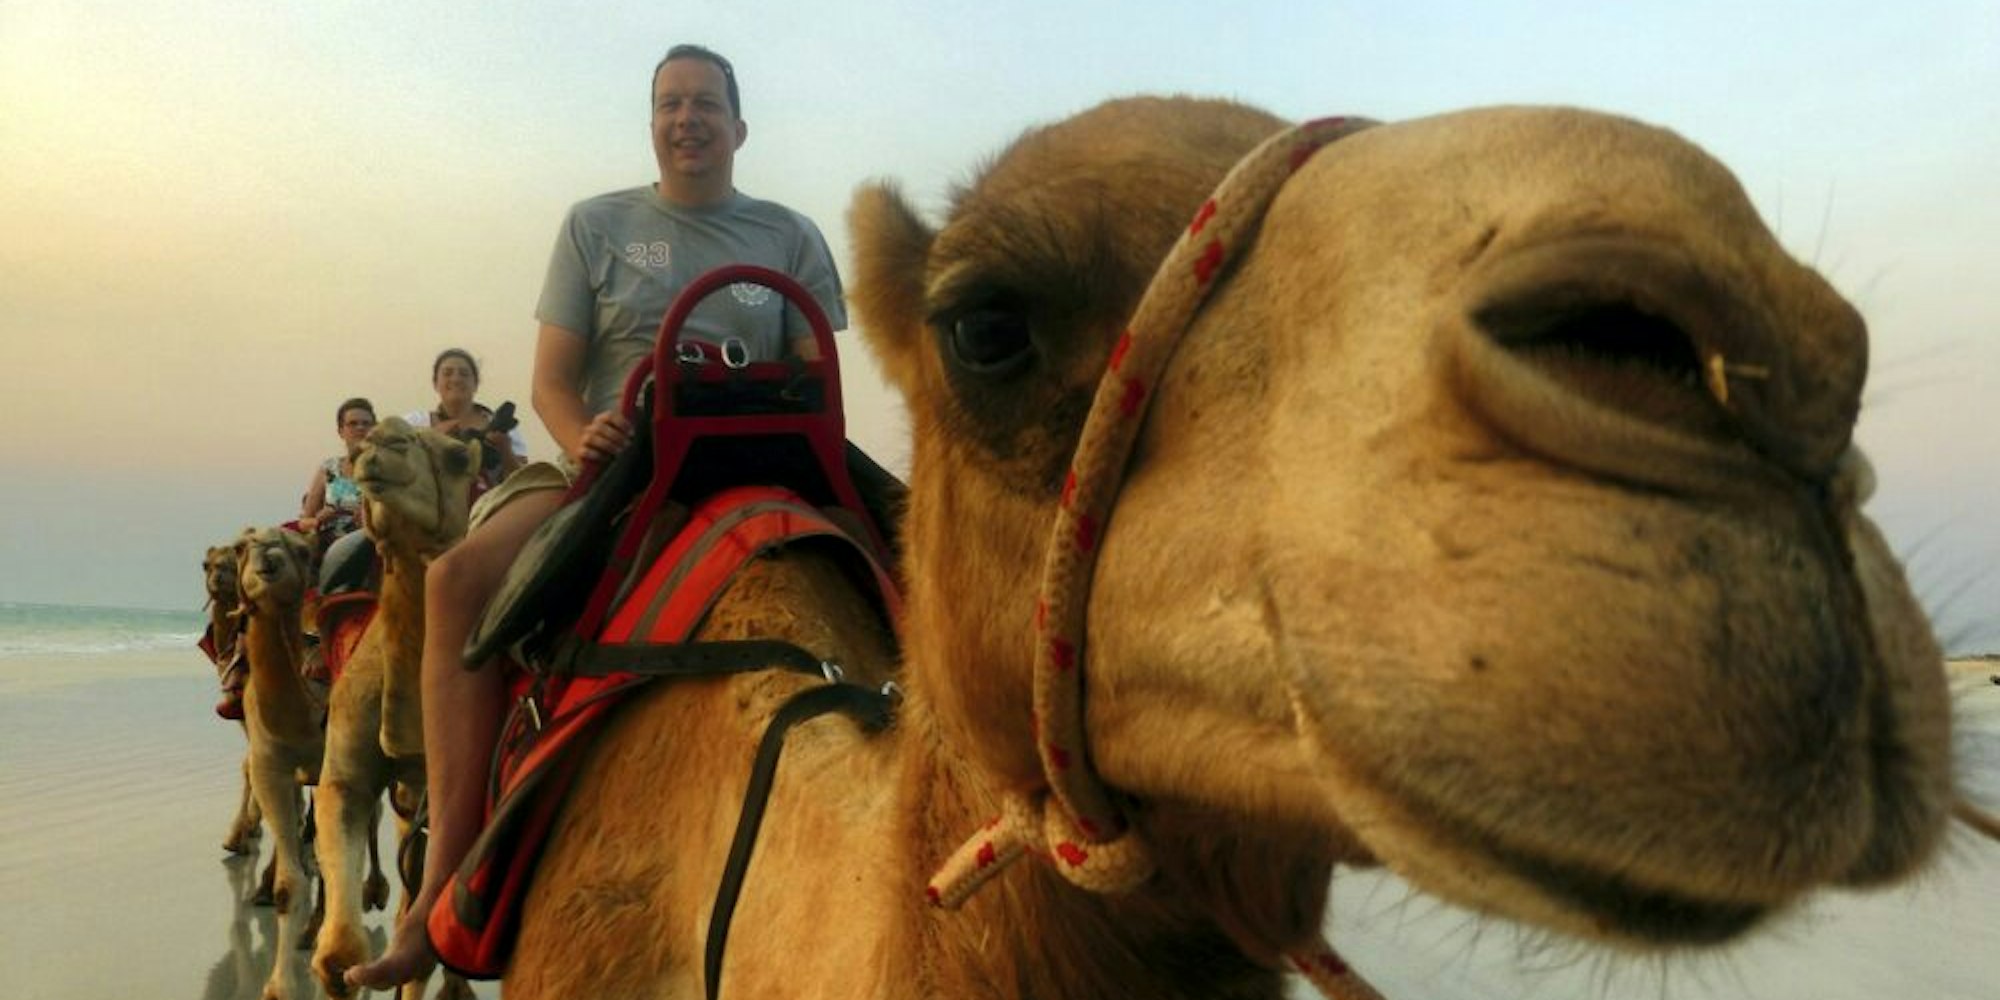 Nicht die drei Weisen aus dem Morgenland reiten hier auf Kamelen, sondern Frank Ochel und Begleiter in der australischen Wüste.